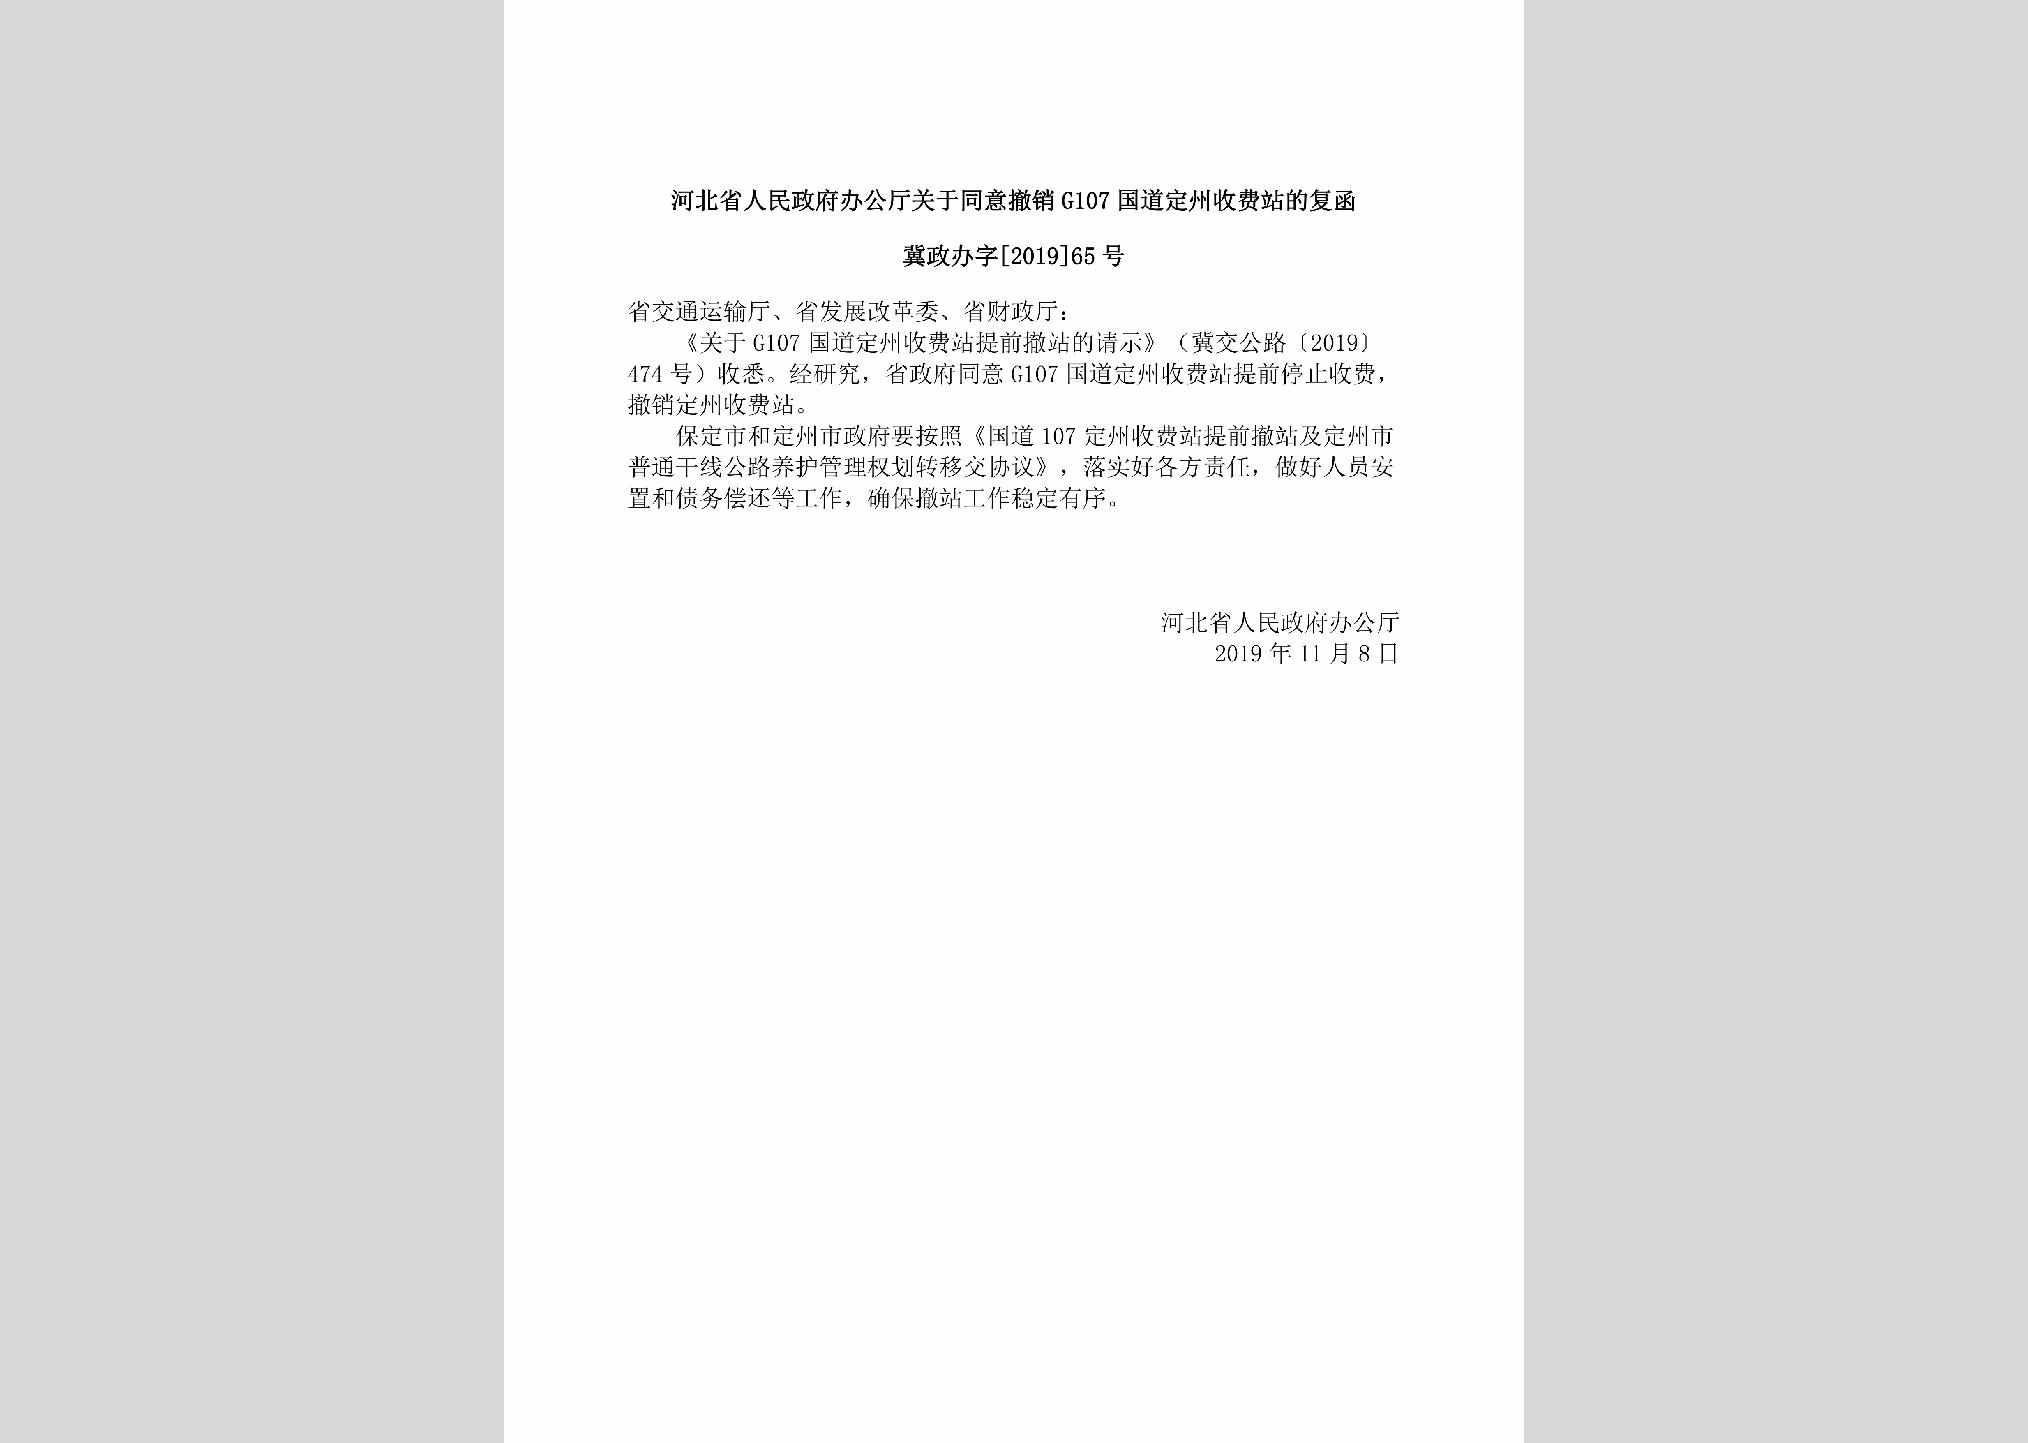 冀政办字[2019]65号：河北省人民政府办公厅关于同意撤销G107国道定州收费站的复函